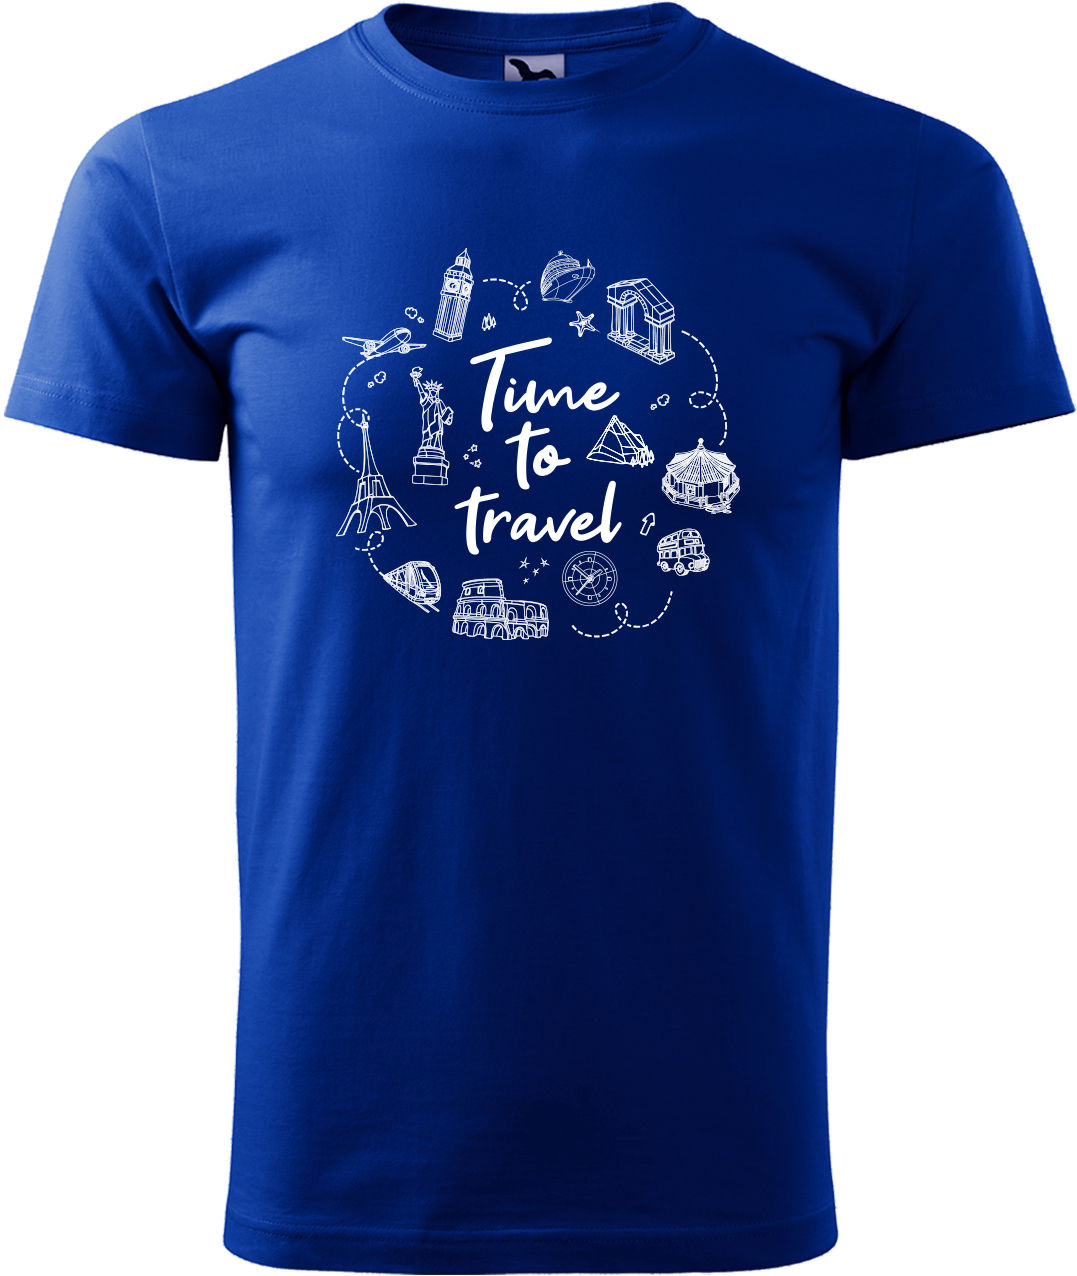 Pánské cestovatelské tričko - Time to travel Velikost: L, Barva: Královská modrá (05), Střih: pánský